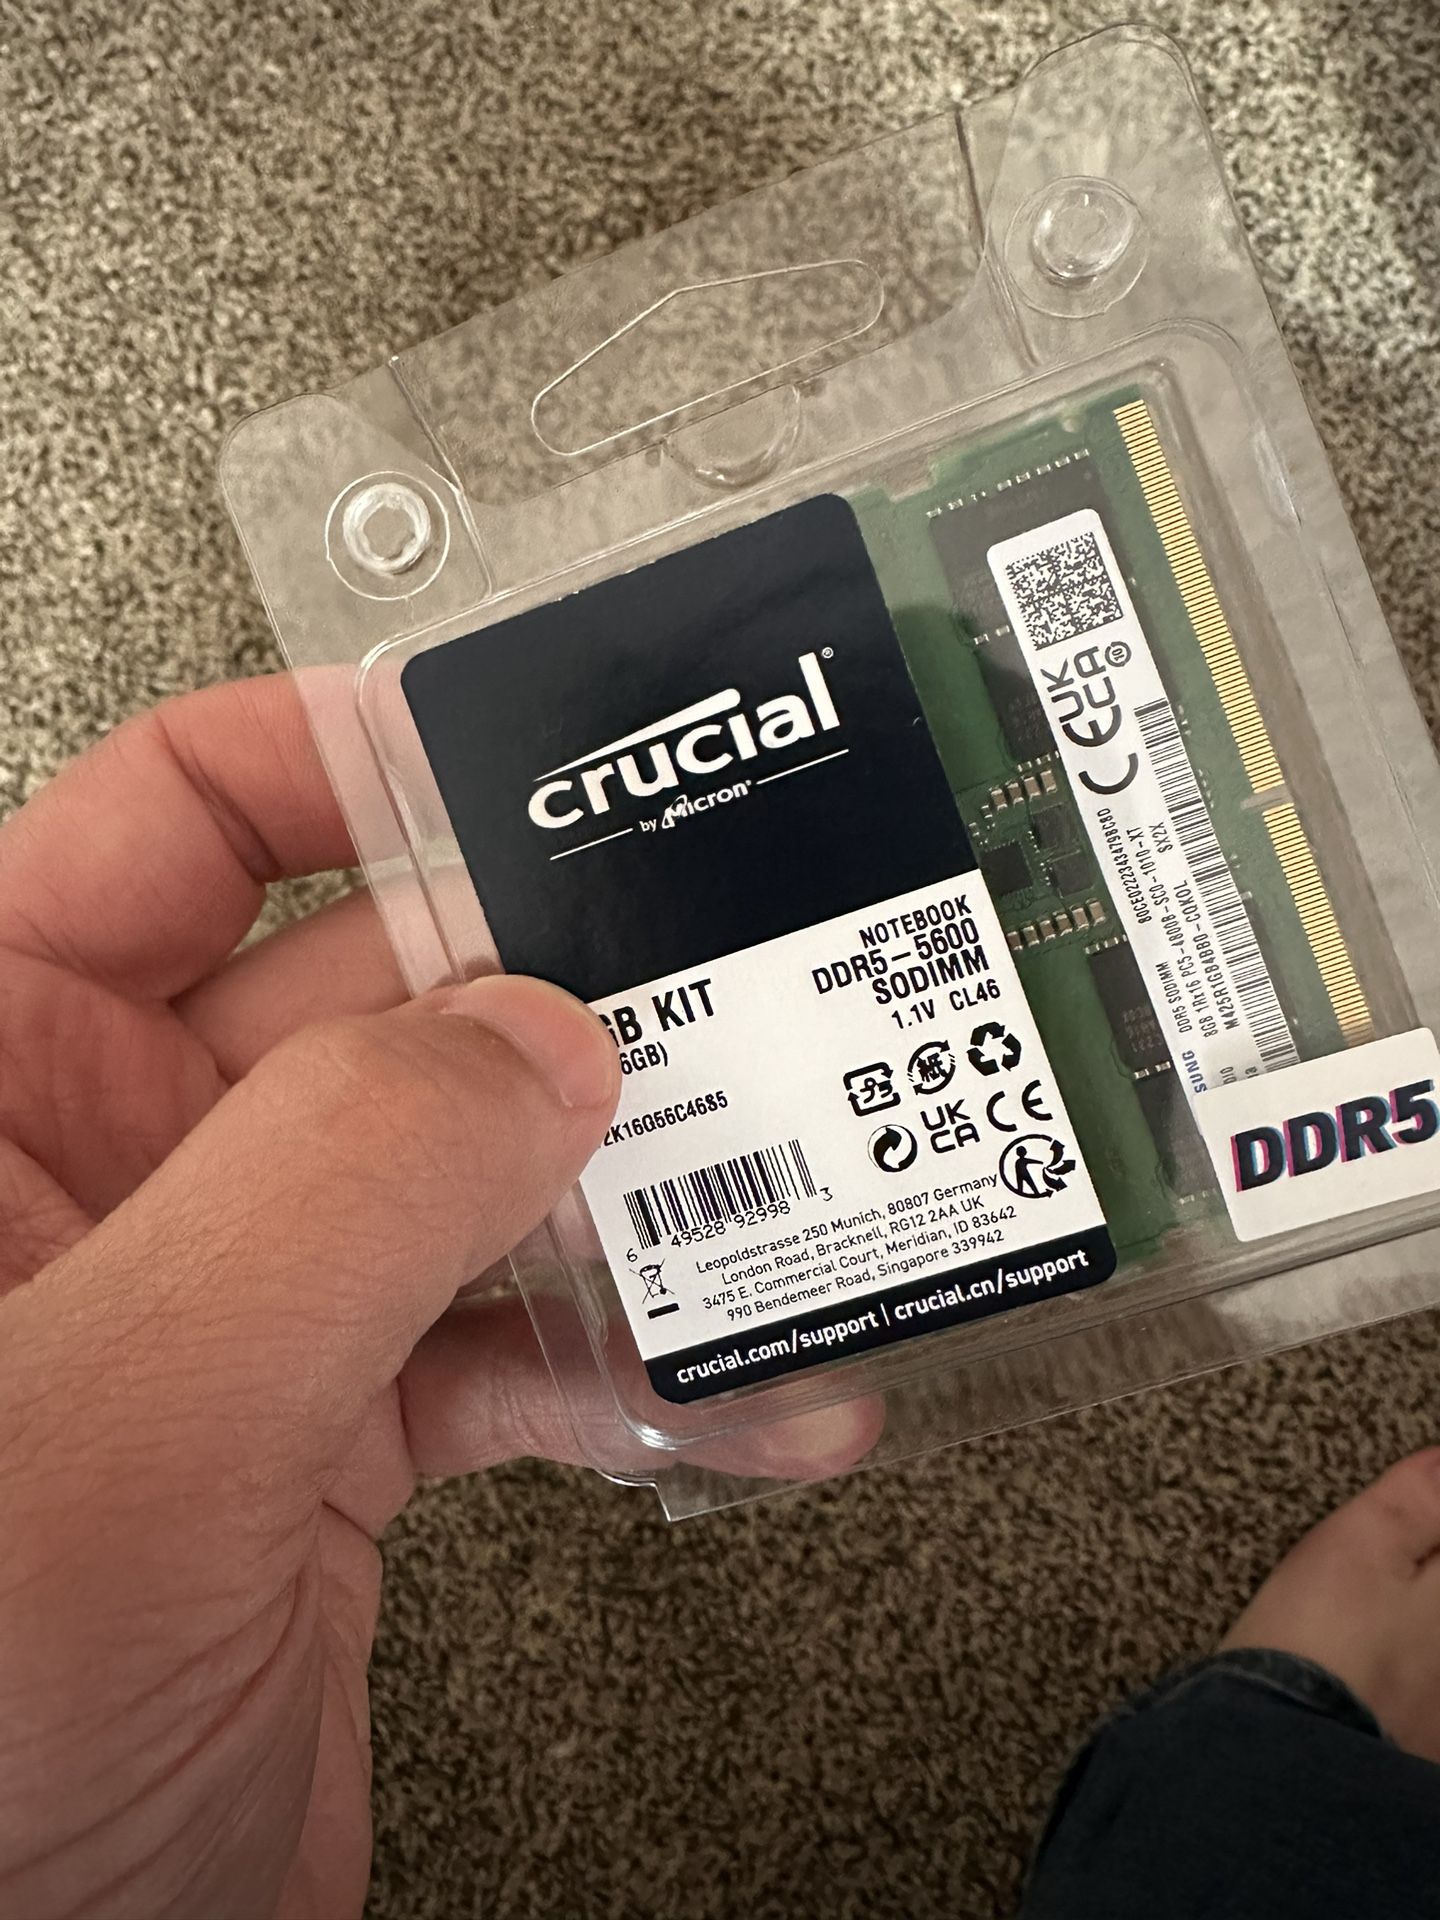 16GB DDR5 RAM